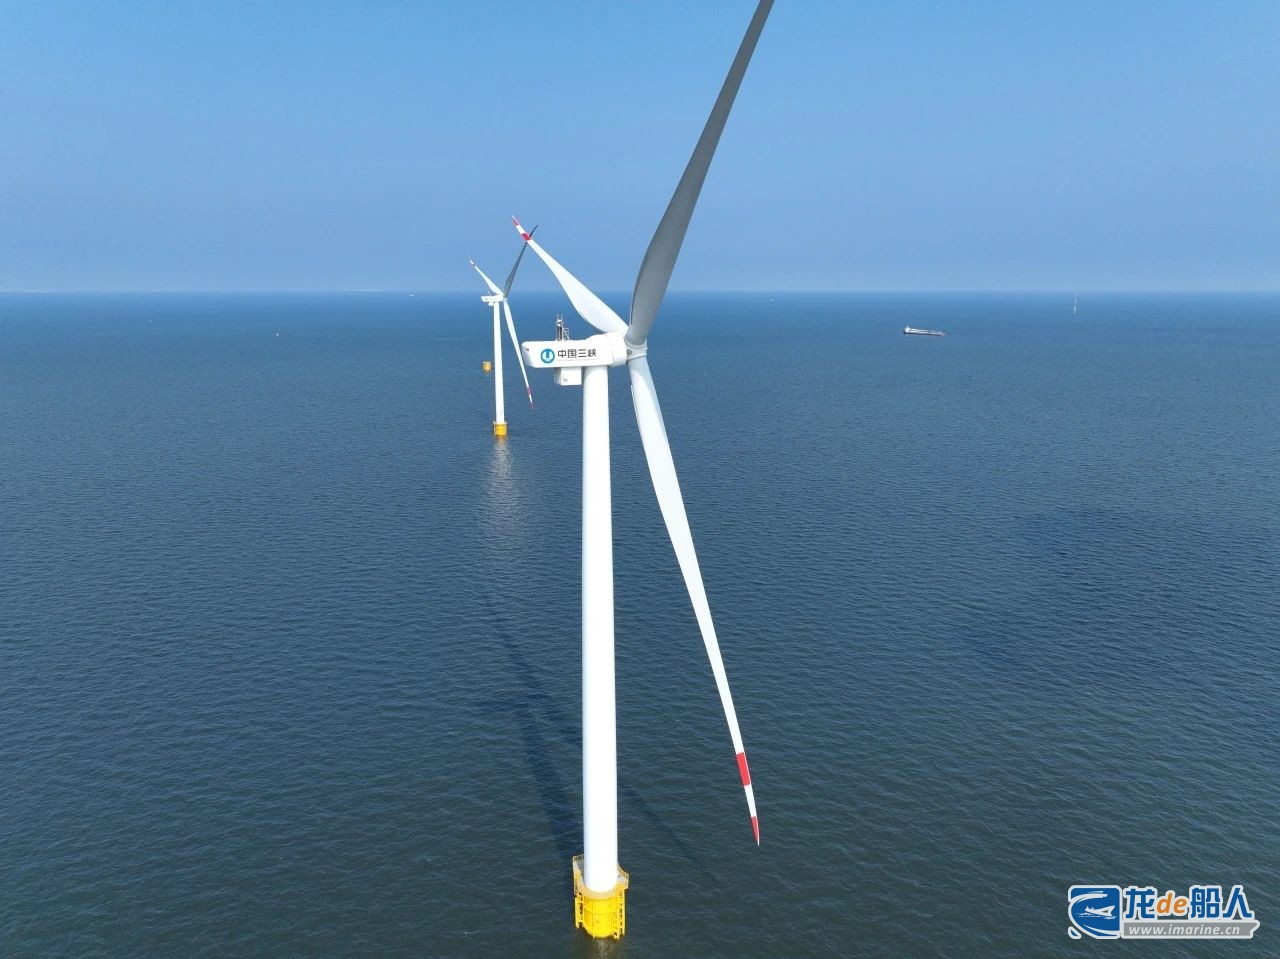 昌邑海上风电项目主要施工内容为25台风机单桩基础施工和风机安装工作